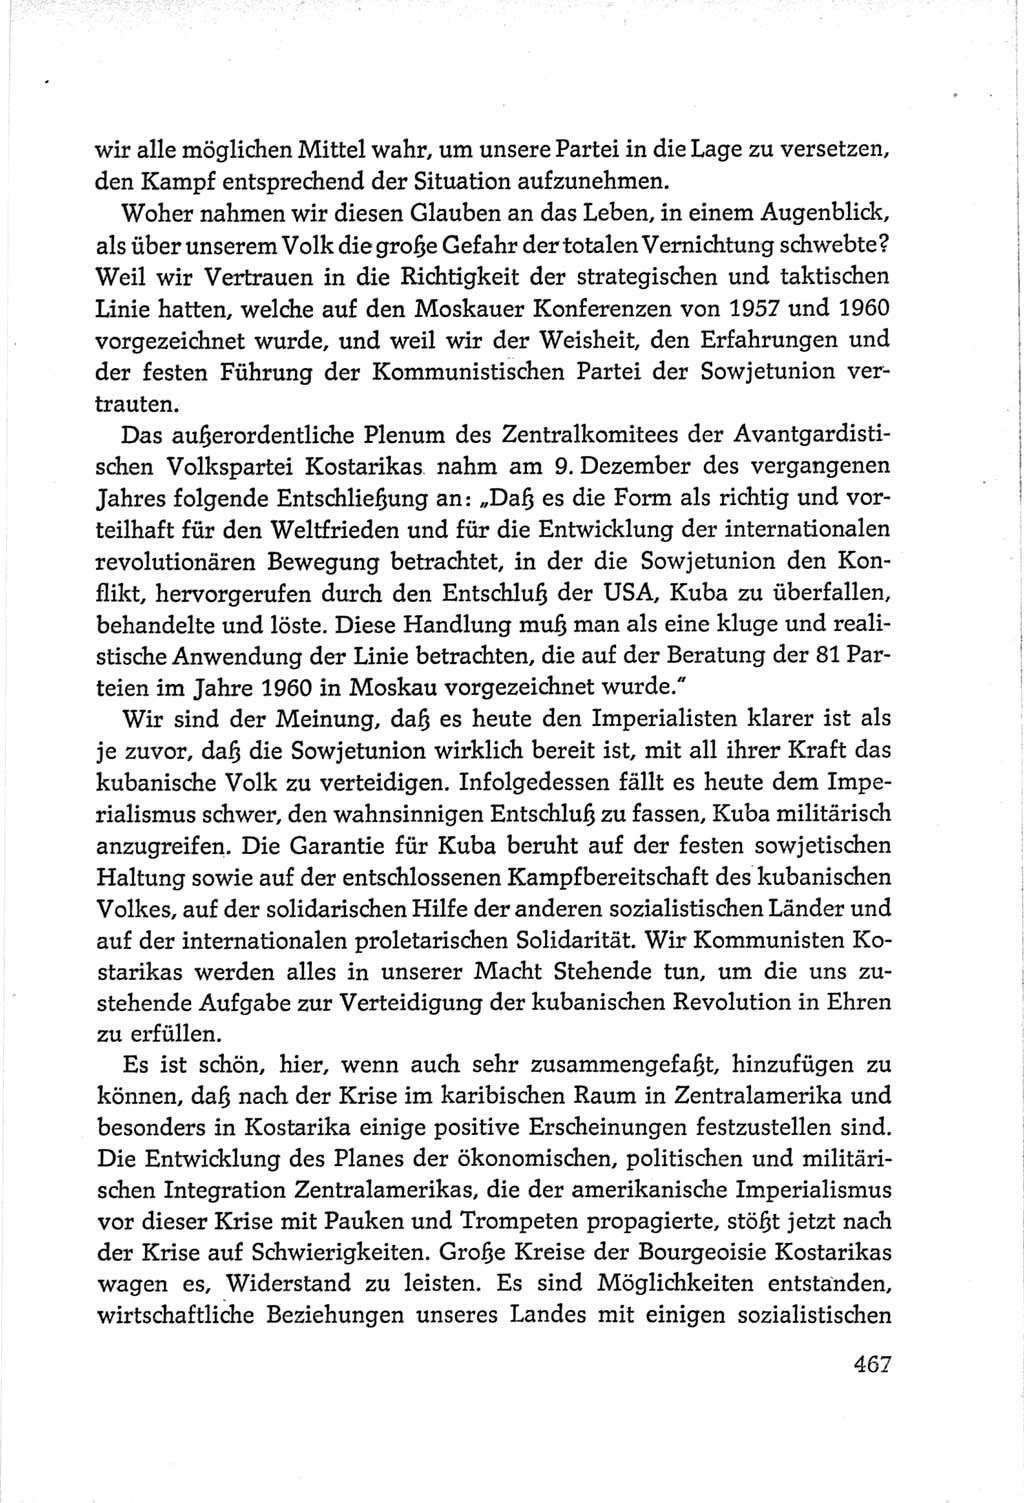 Protokoll der Verhandlungen des Ⅵ. Parteitages der Sozialistischen Einheitspartei Deutschlands (SED) [Deutsche Demokratische Republik (DDR)] 1963, Band Ⅱ, Seite 467 (Prot. Verh. Ⅵ. PT SED DDR 1963, Bd. Ⅱ, S. 467)